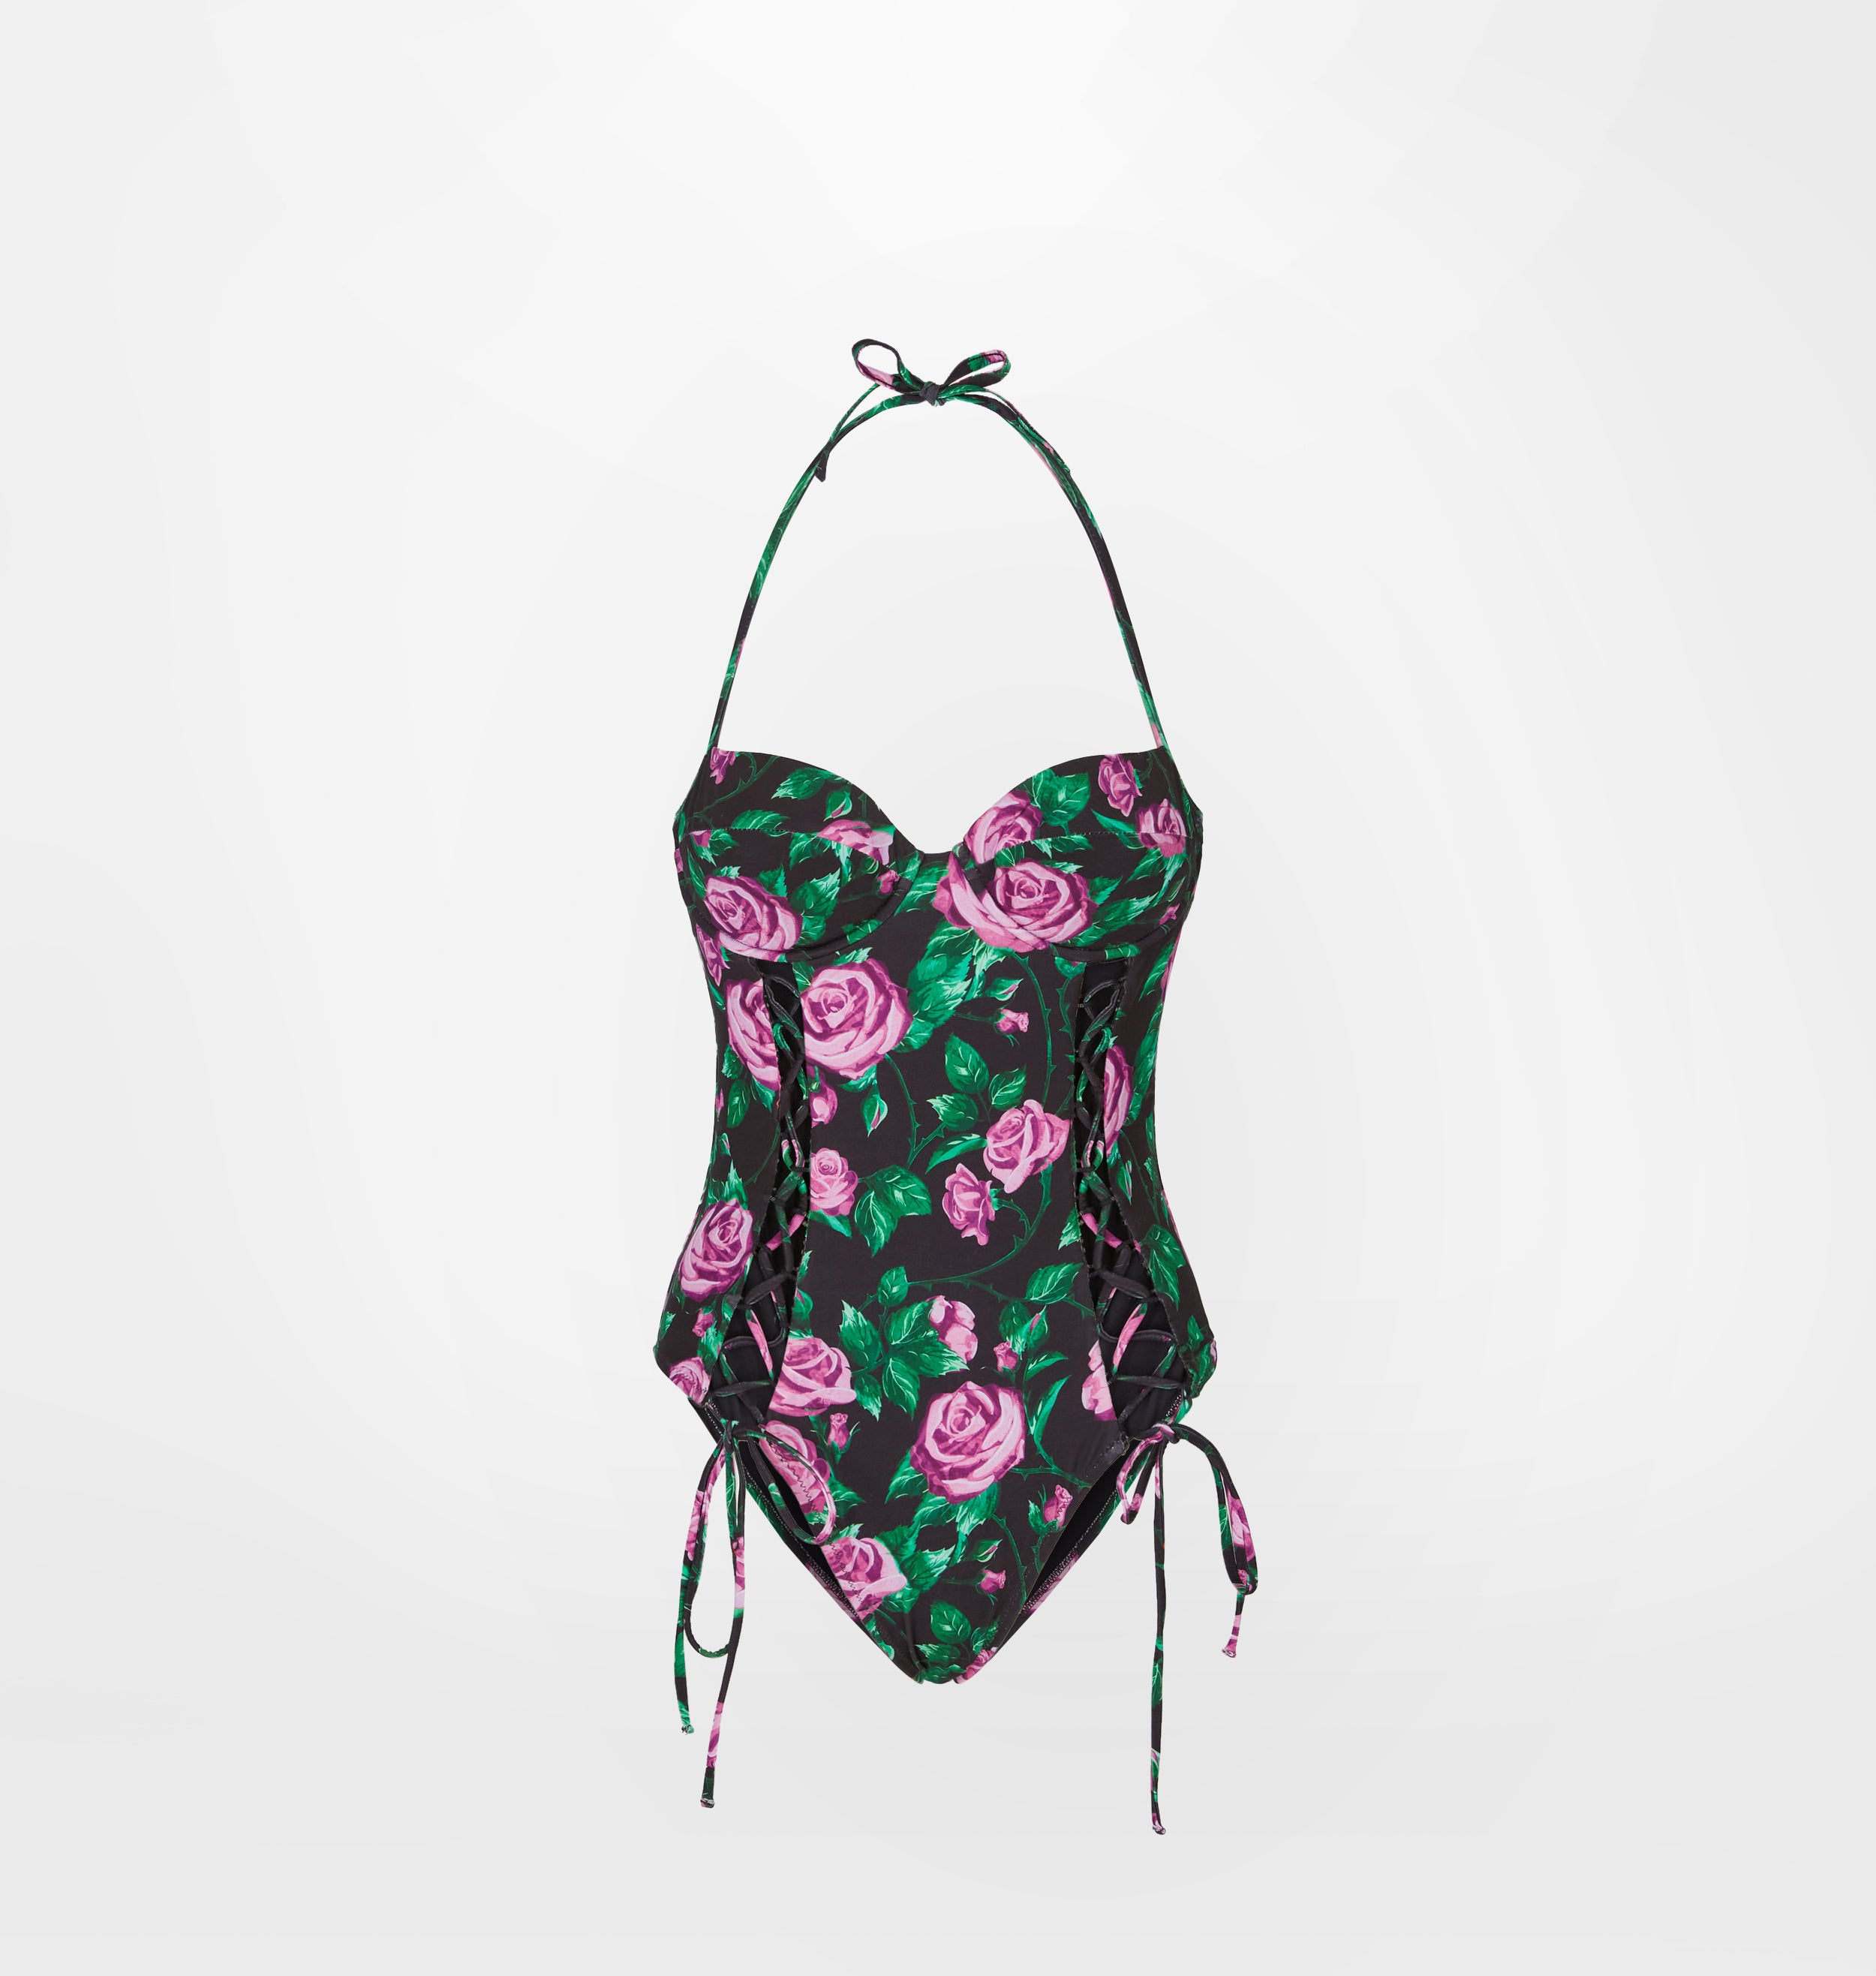 CHIARA FERRAGNI Outlet: Swimsuit women - Black  CHIARA FERRAGNI swimsuit  A71045211 online at